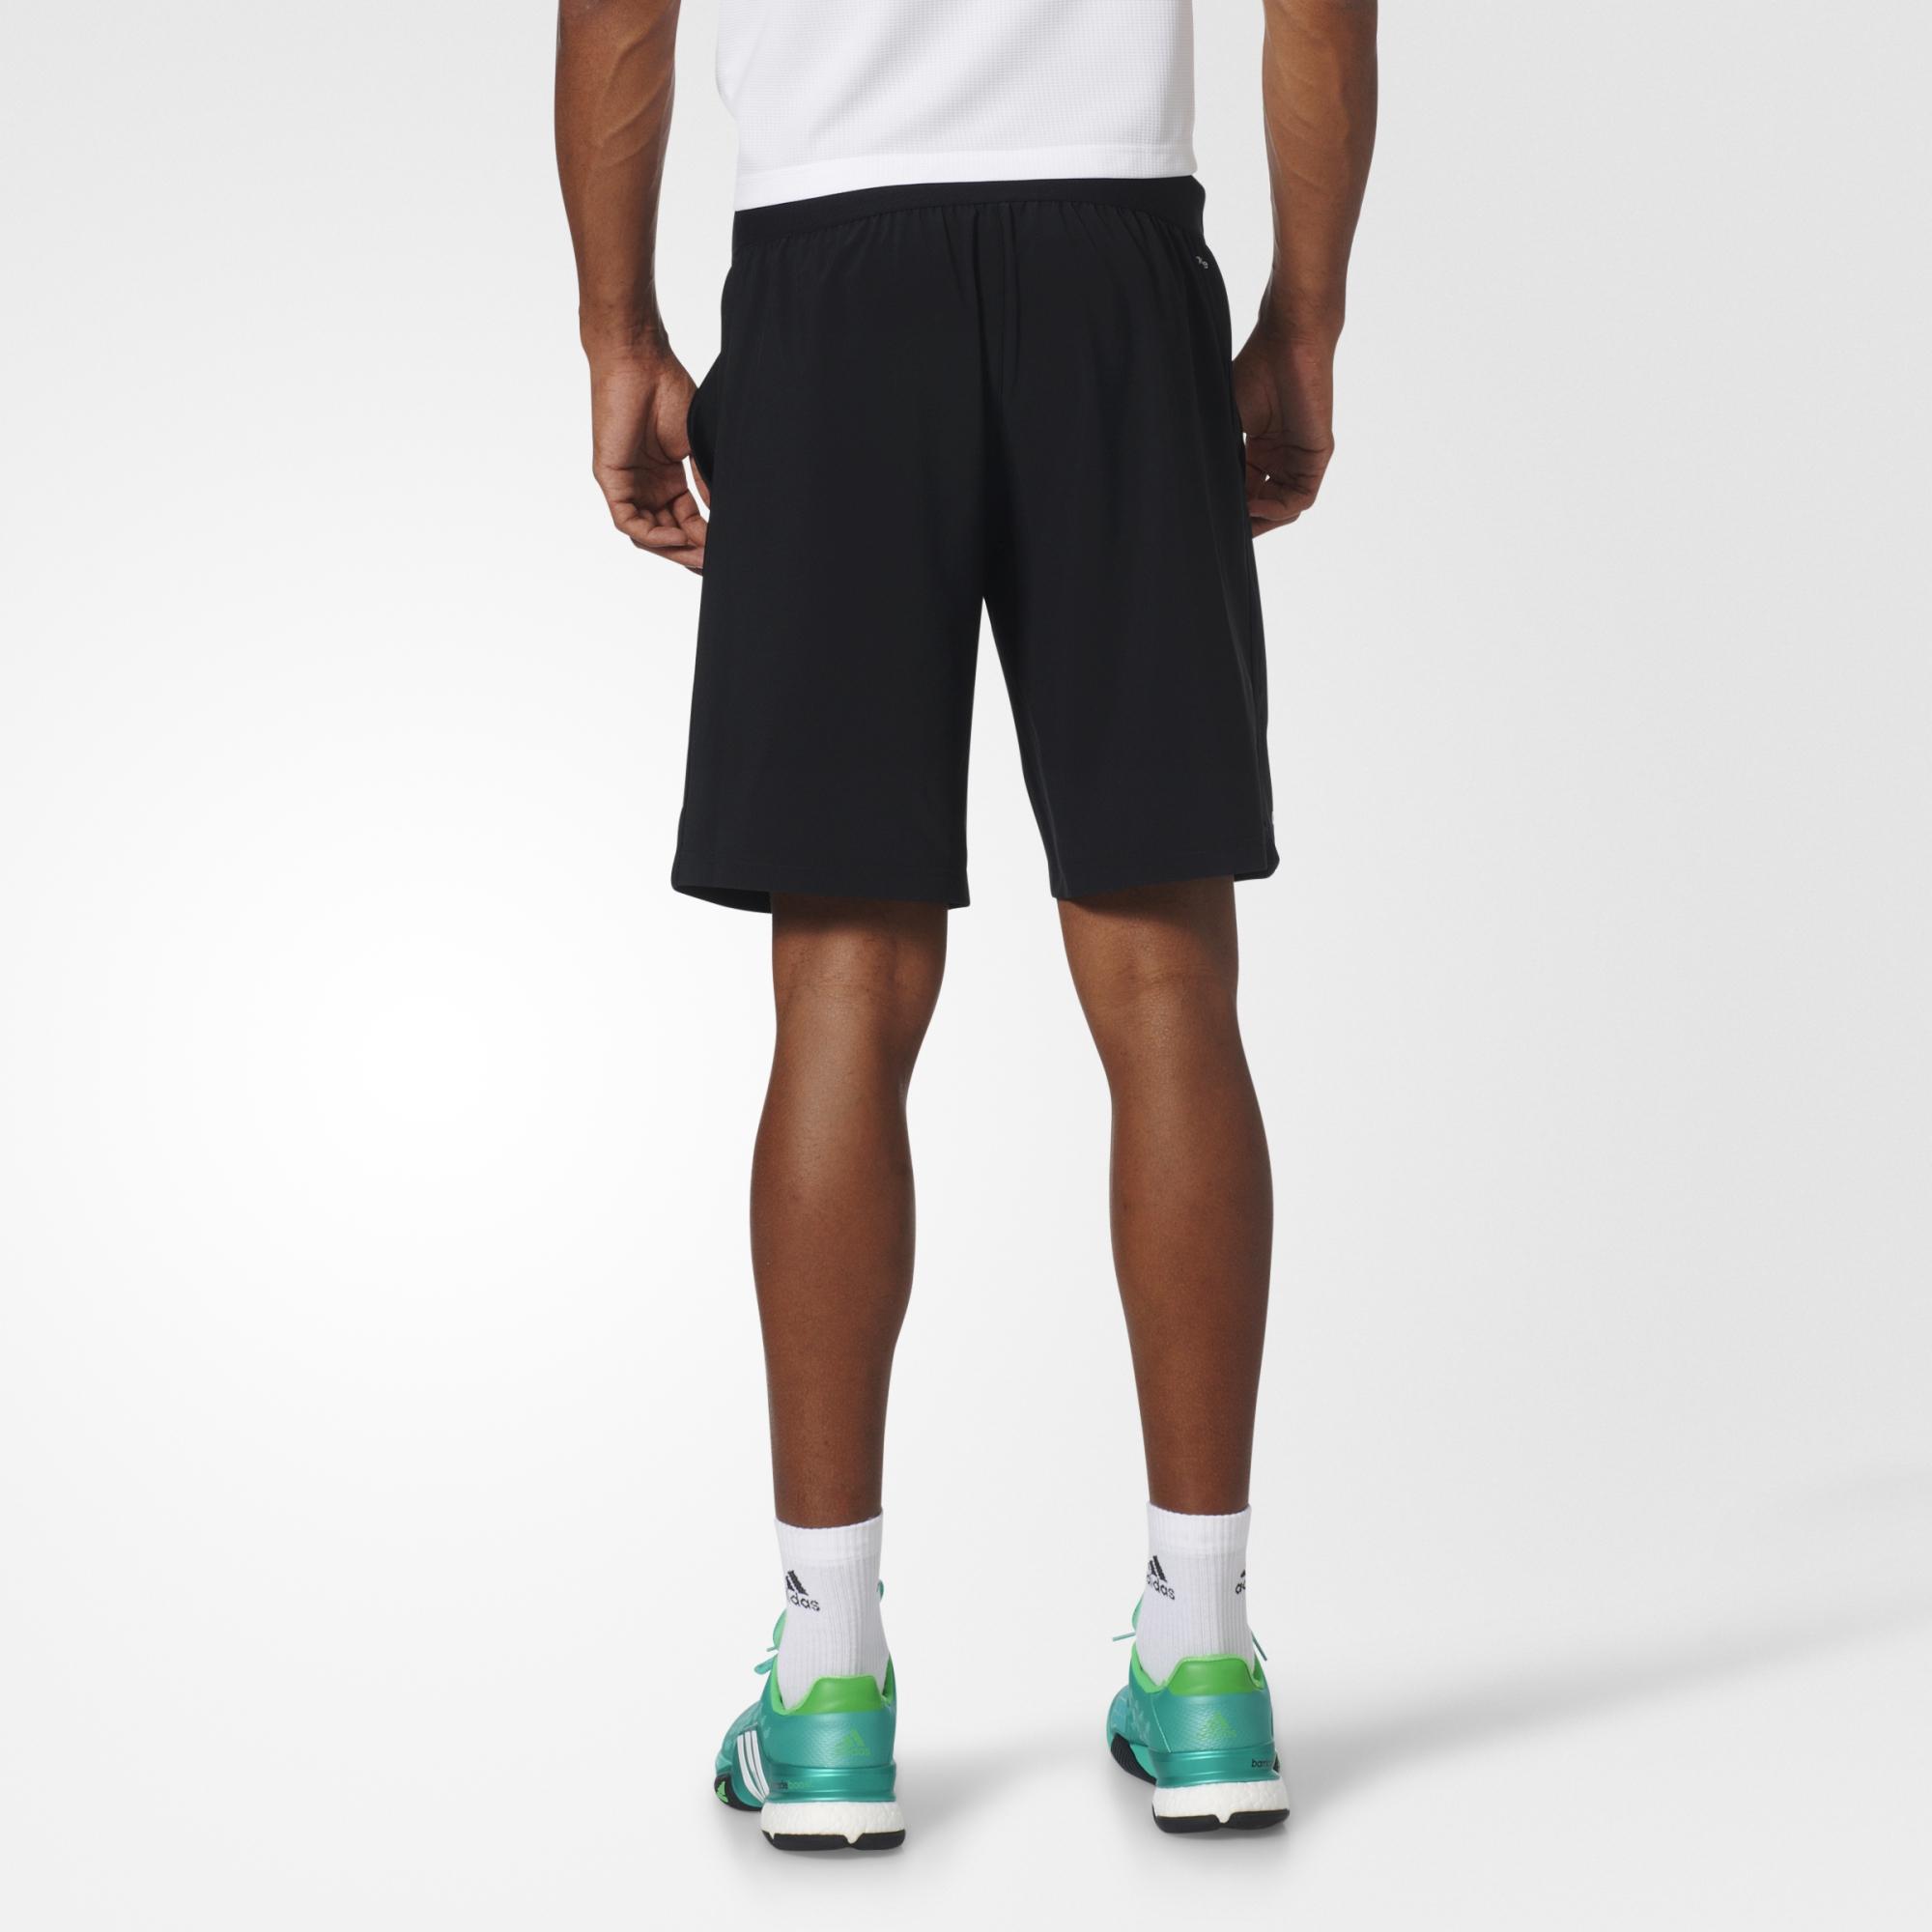 Adidas Mens Advantage Shorts - Black - Tennisnuts.com